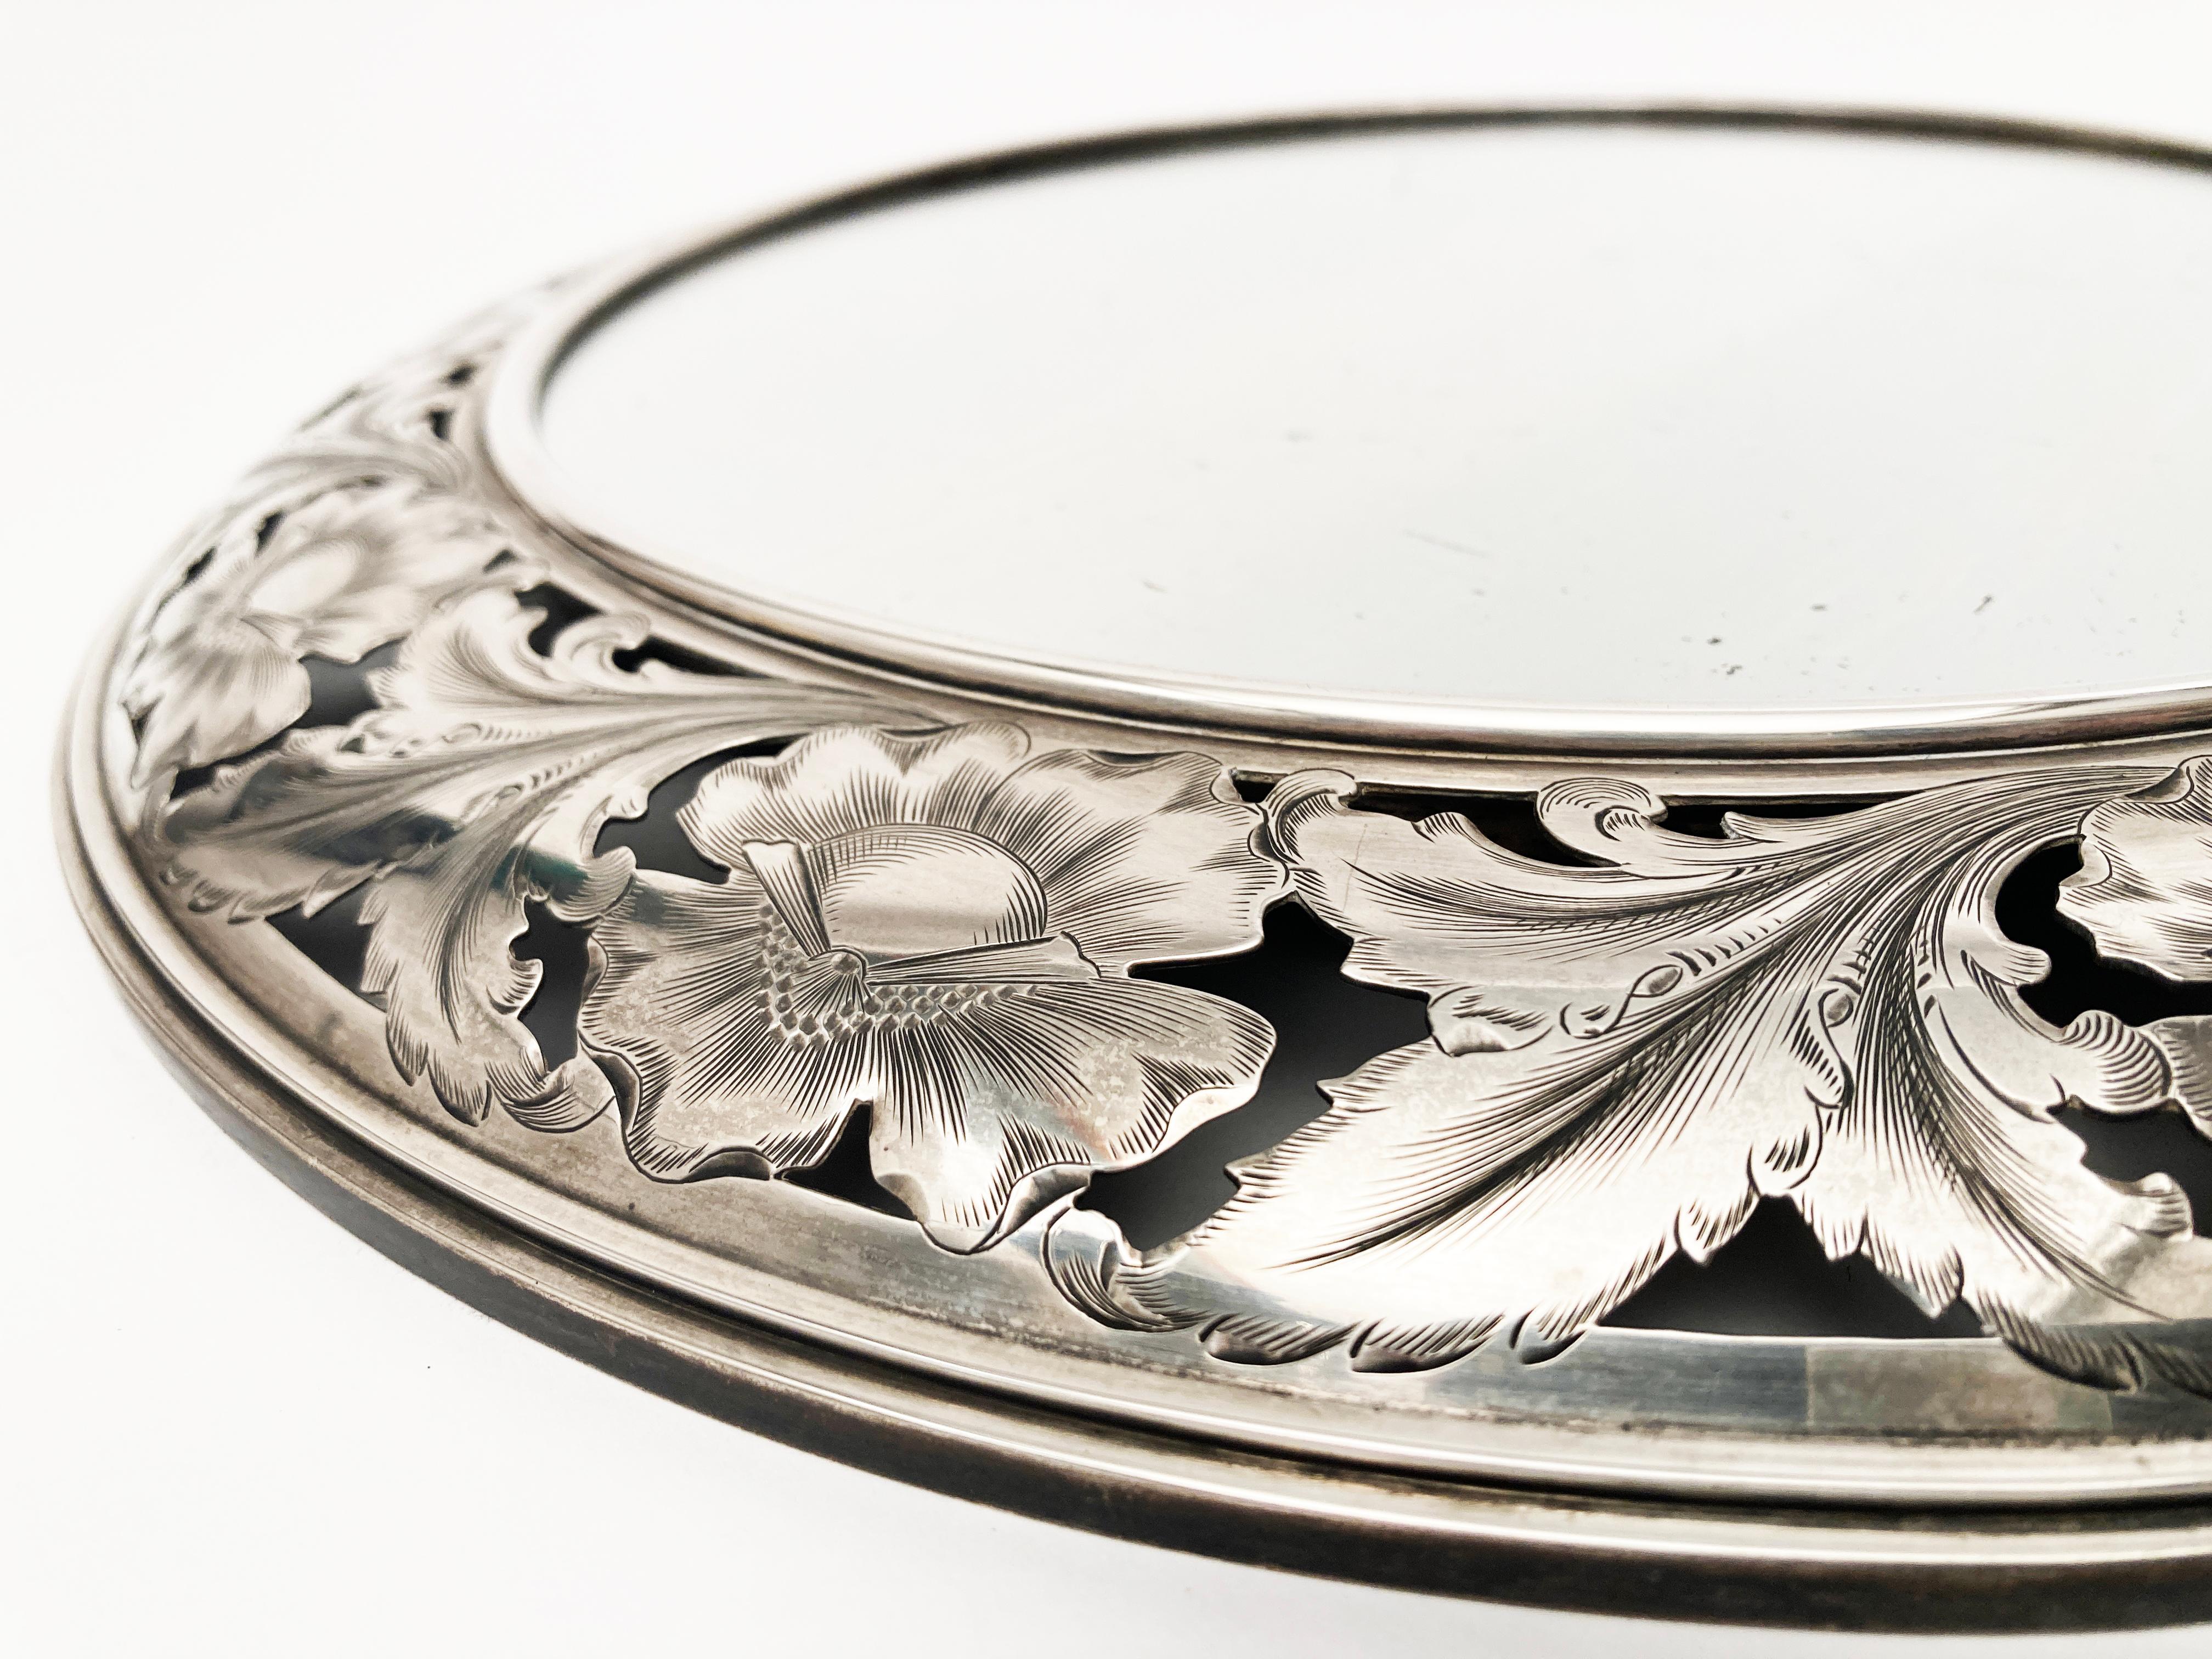 Dieser verschnörkelte, kreisförmige Spiegel mit Sterlingsilberrahmen hat detaillierte florale und blattartige Schnitzereien/Ätzungen im Silber mit Netzstruktur, die diesen Wandspiegel außergewöhnlich machen. Das Stück ist auf der Rückseite mit